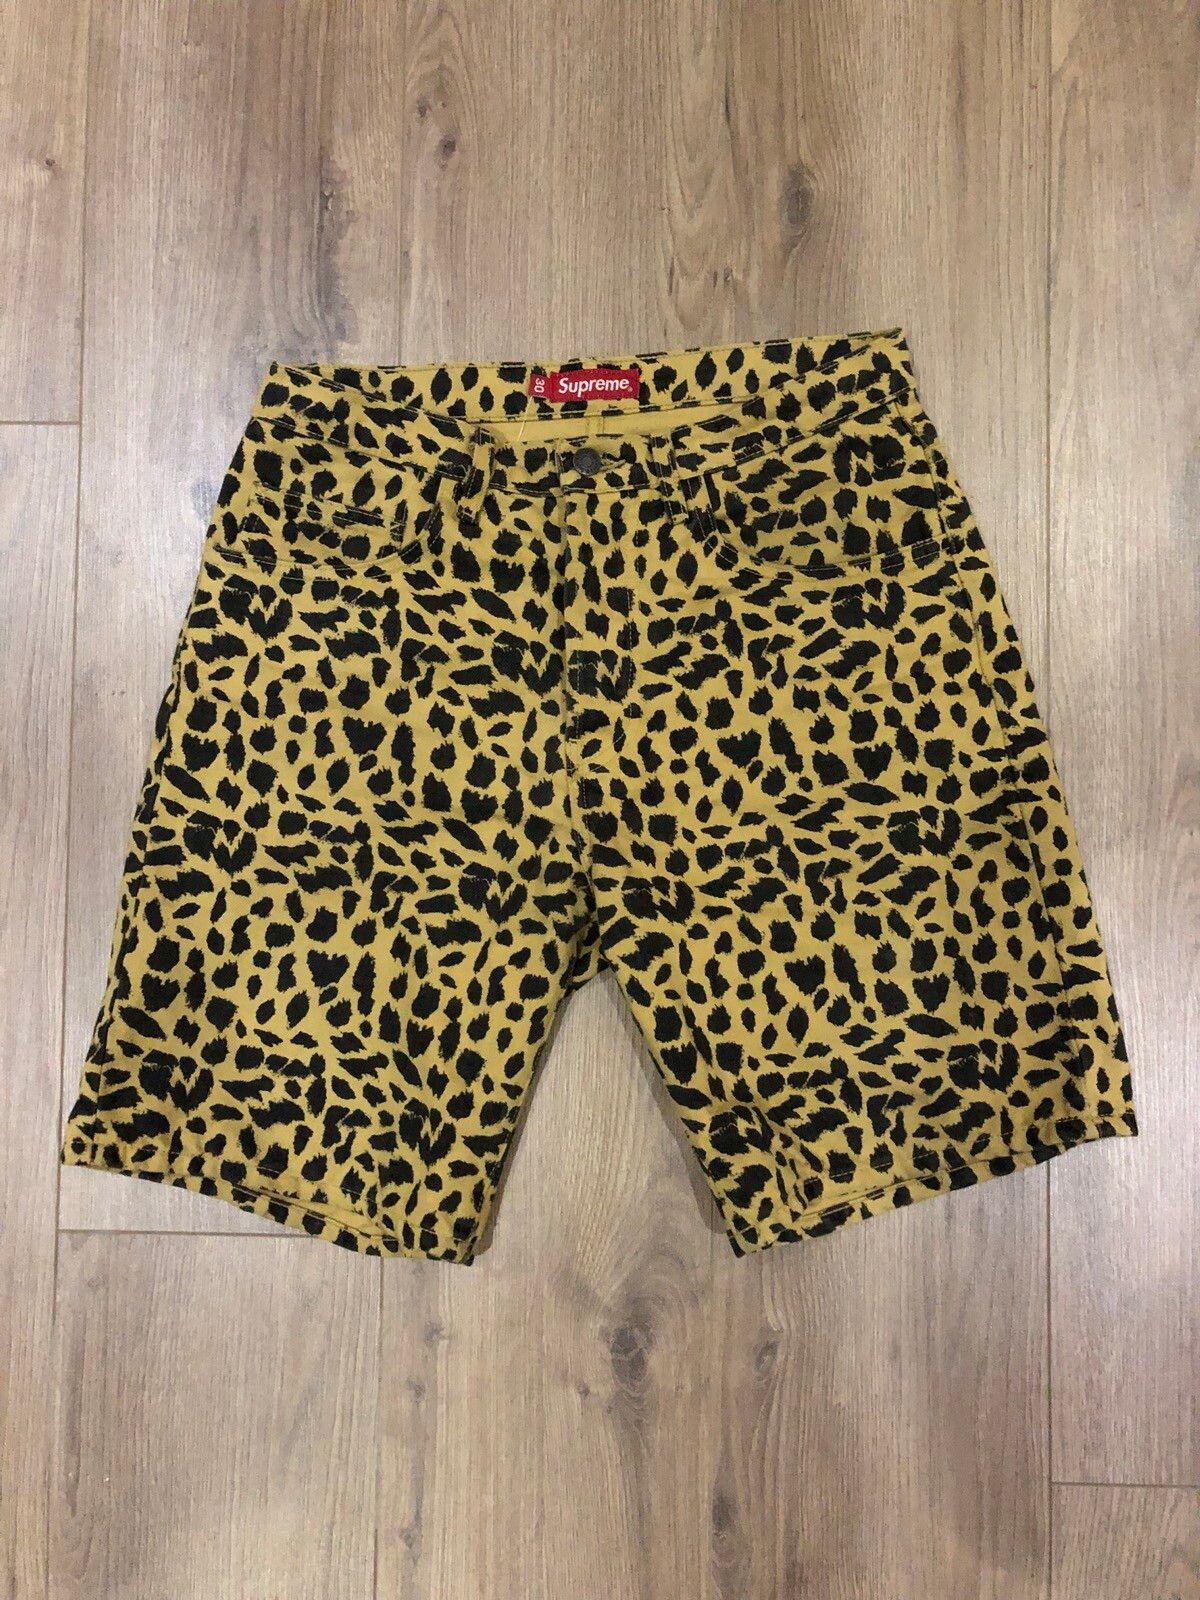 Supreme Leopard Pants | Grailed